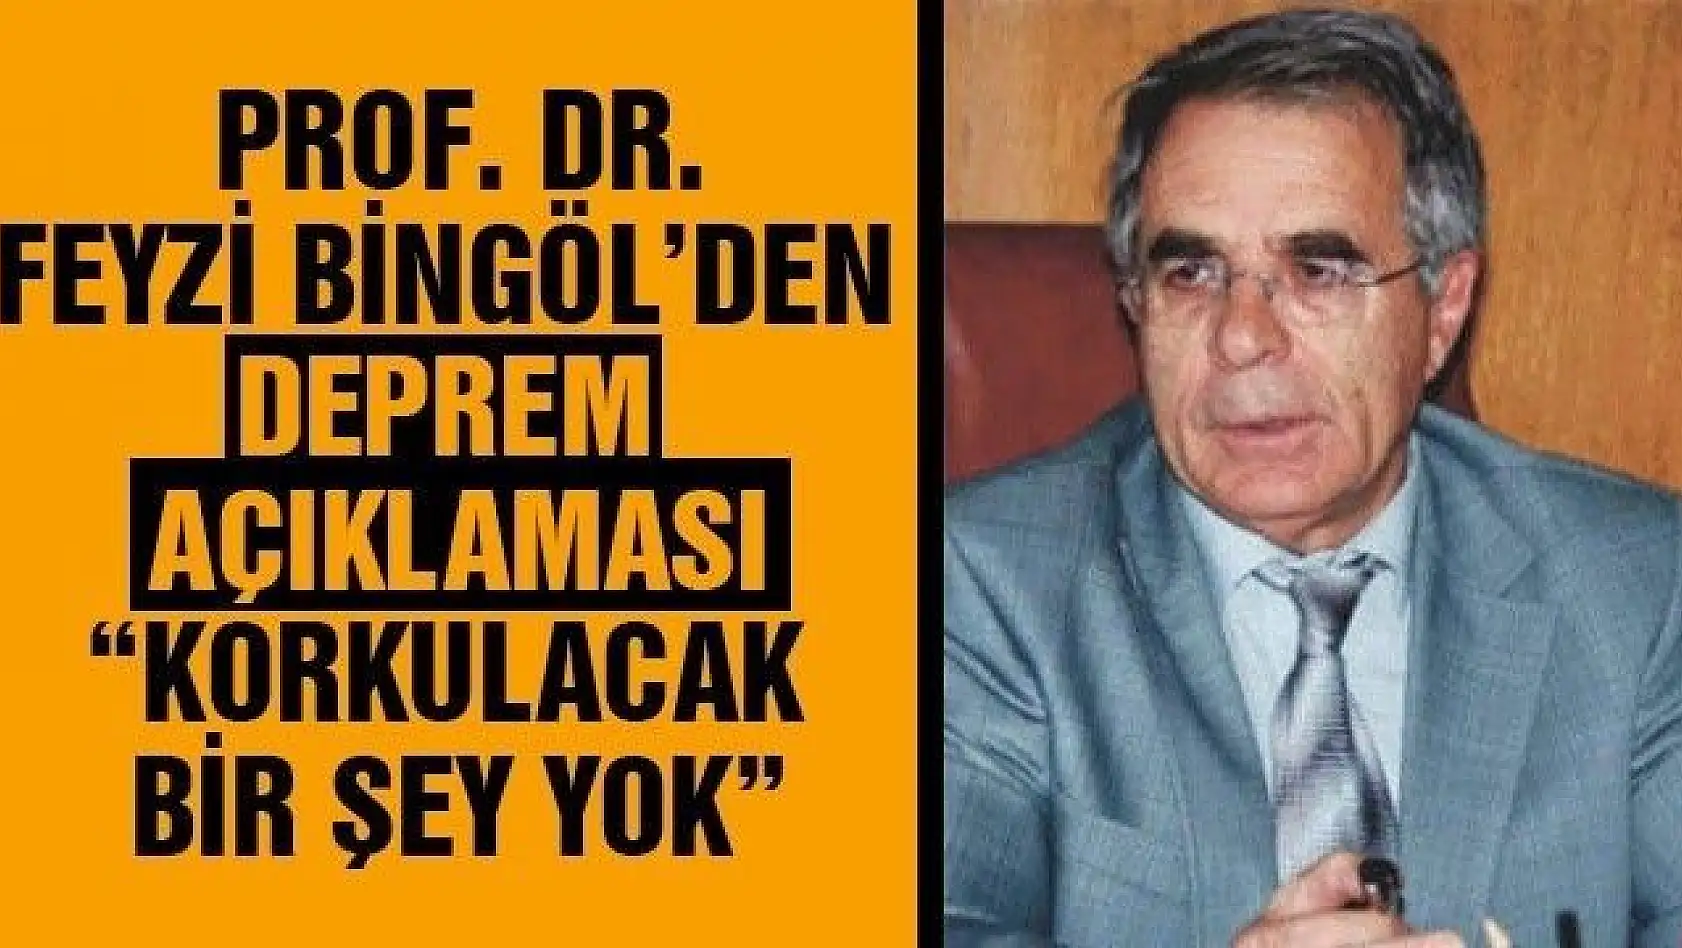 Prof. Dr. Bingöl'den deprem açıklaması